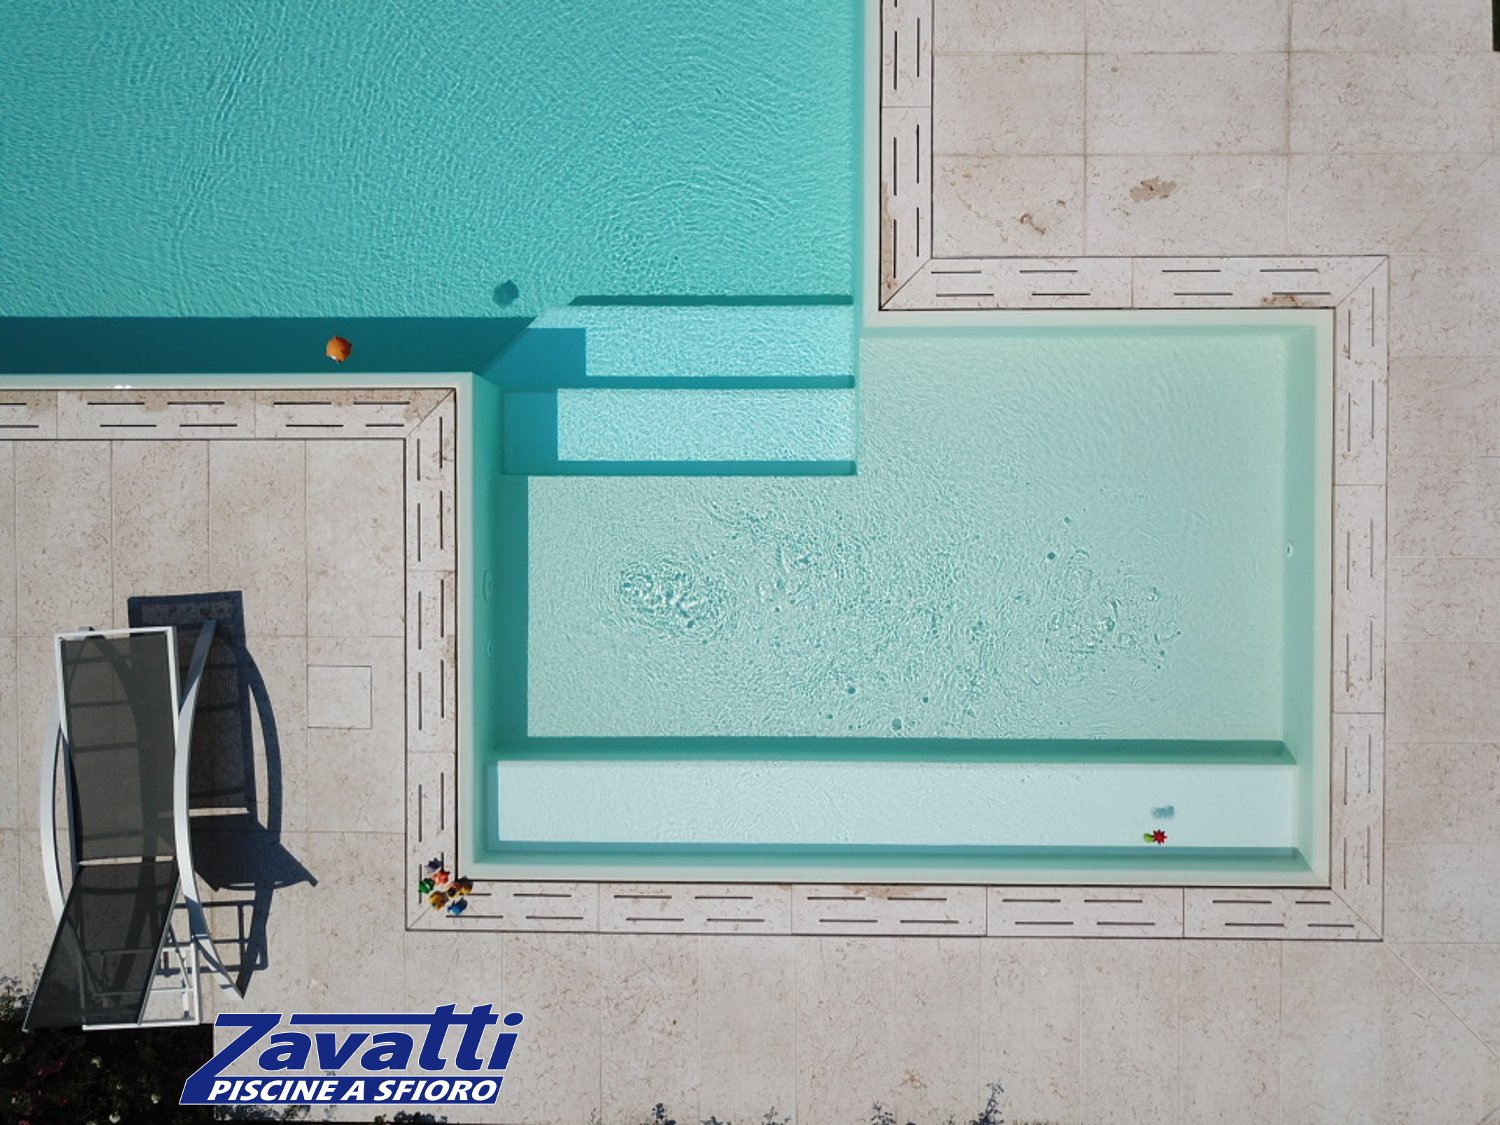 Dettaglio zona d'ingresso di una piscina a sfioro Zavatti con rivestimento bianco